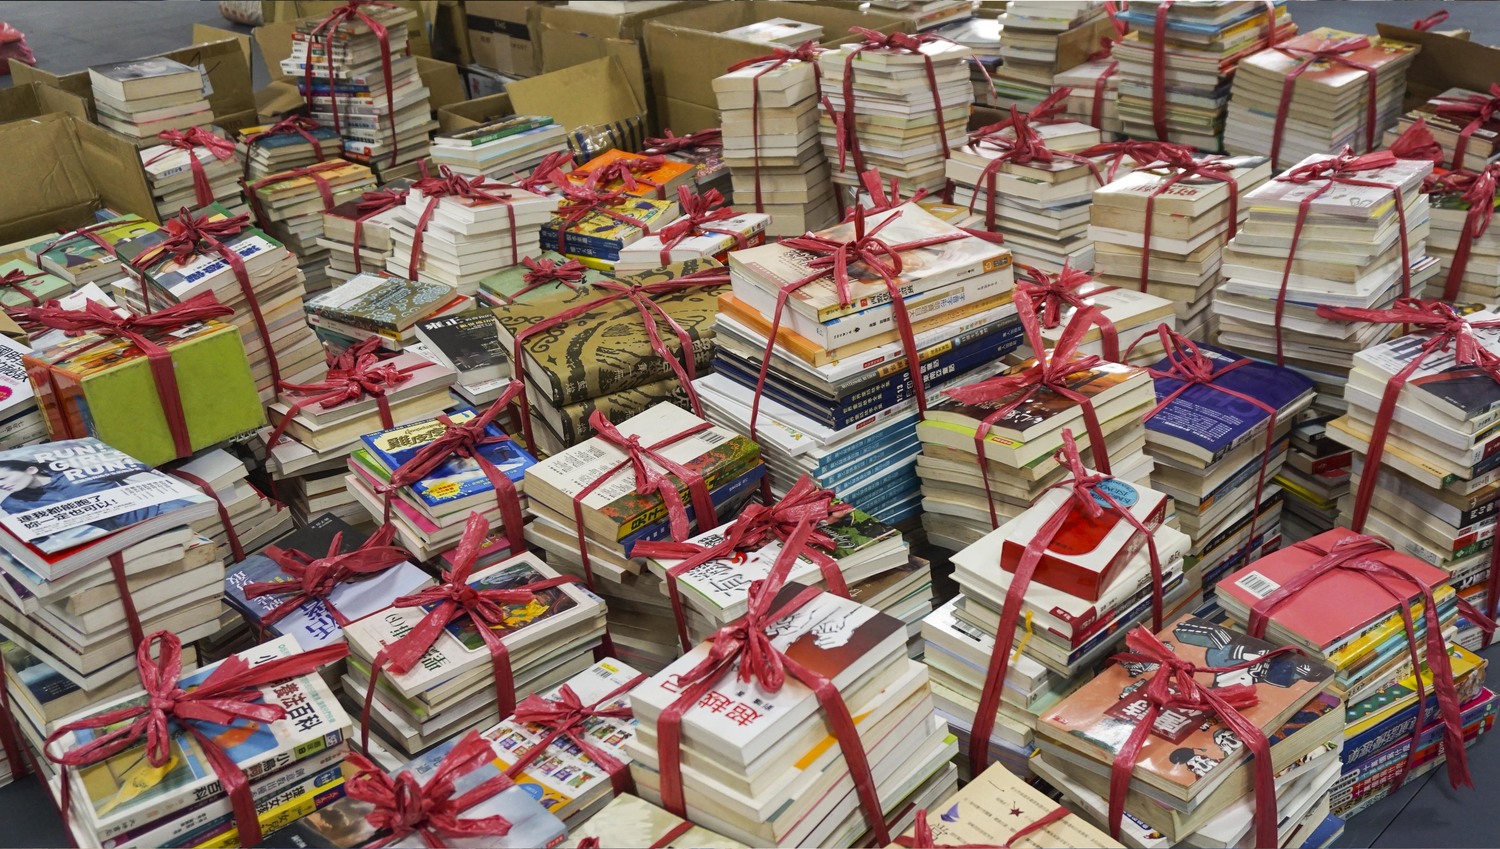 愛閱二手書坊捐贈的2500本好書。   網銀基金會/提供